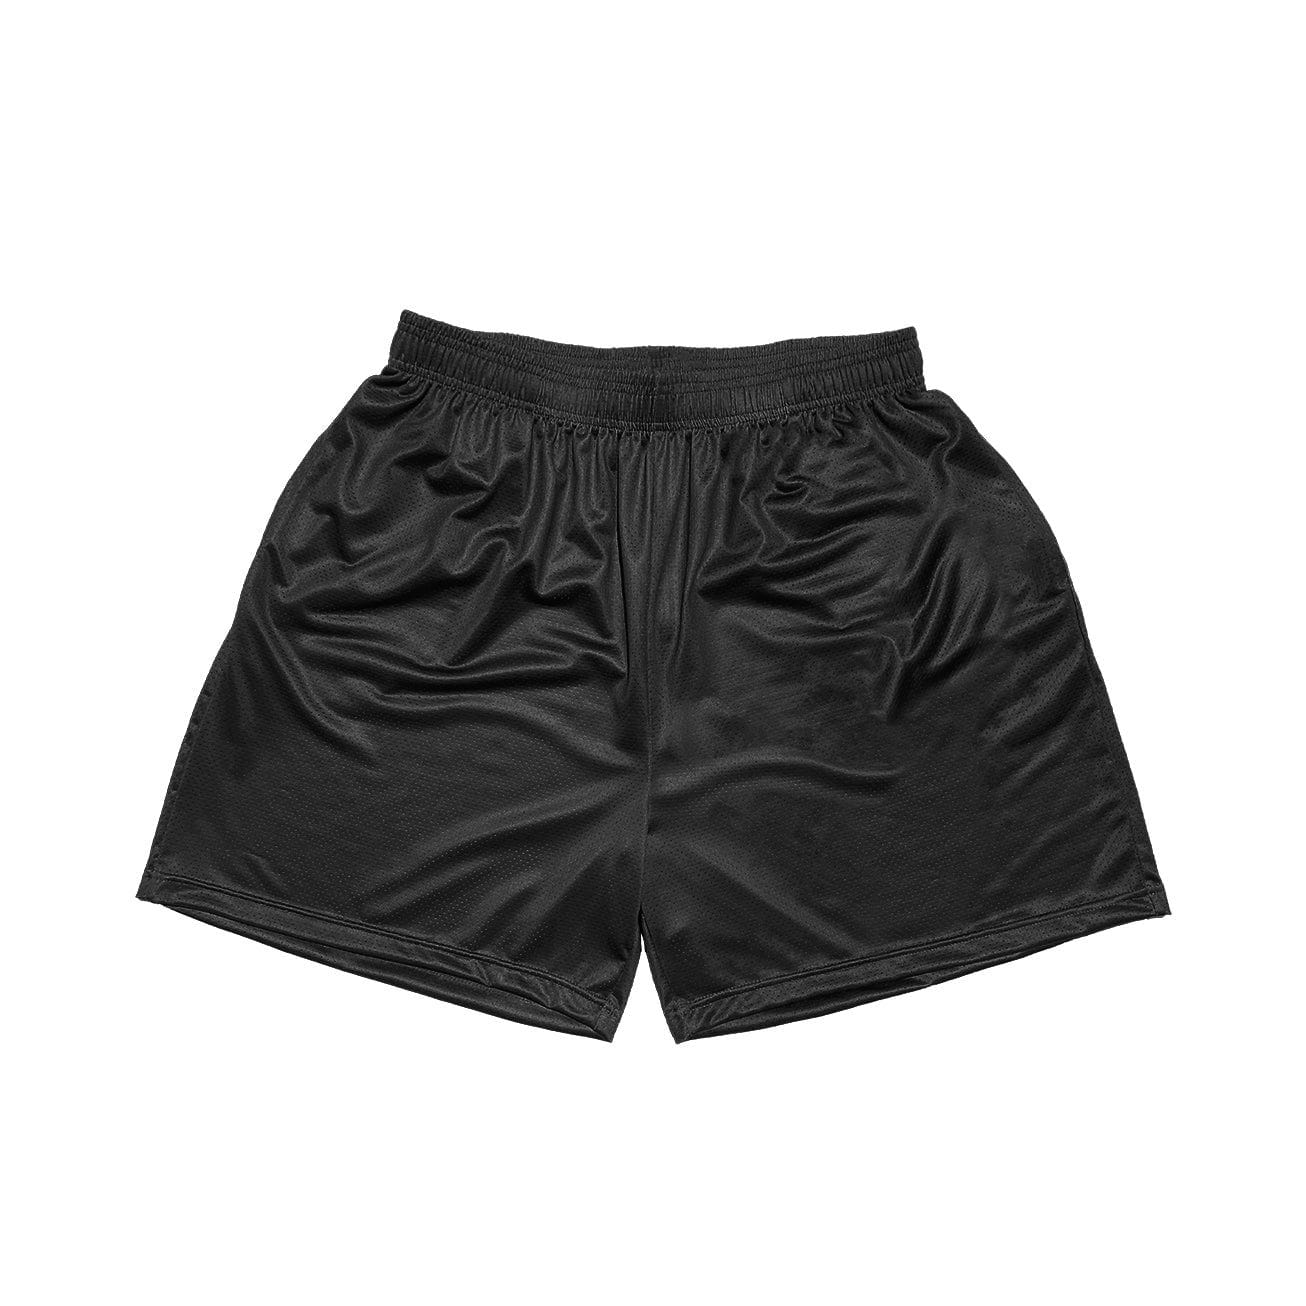 Arise Comfort Shorts - Black - ShopperBoard